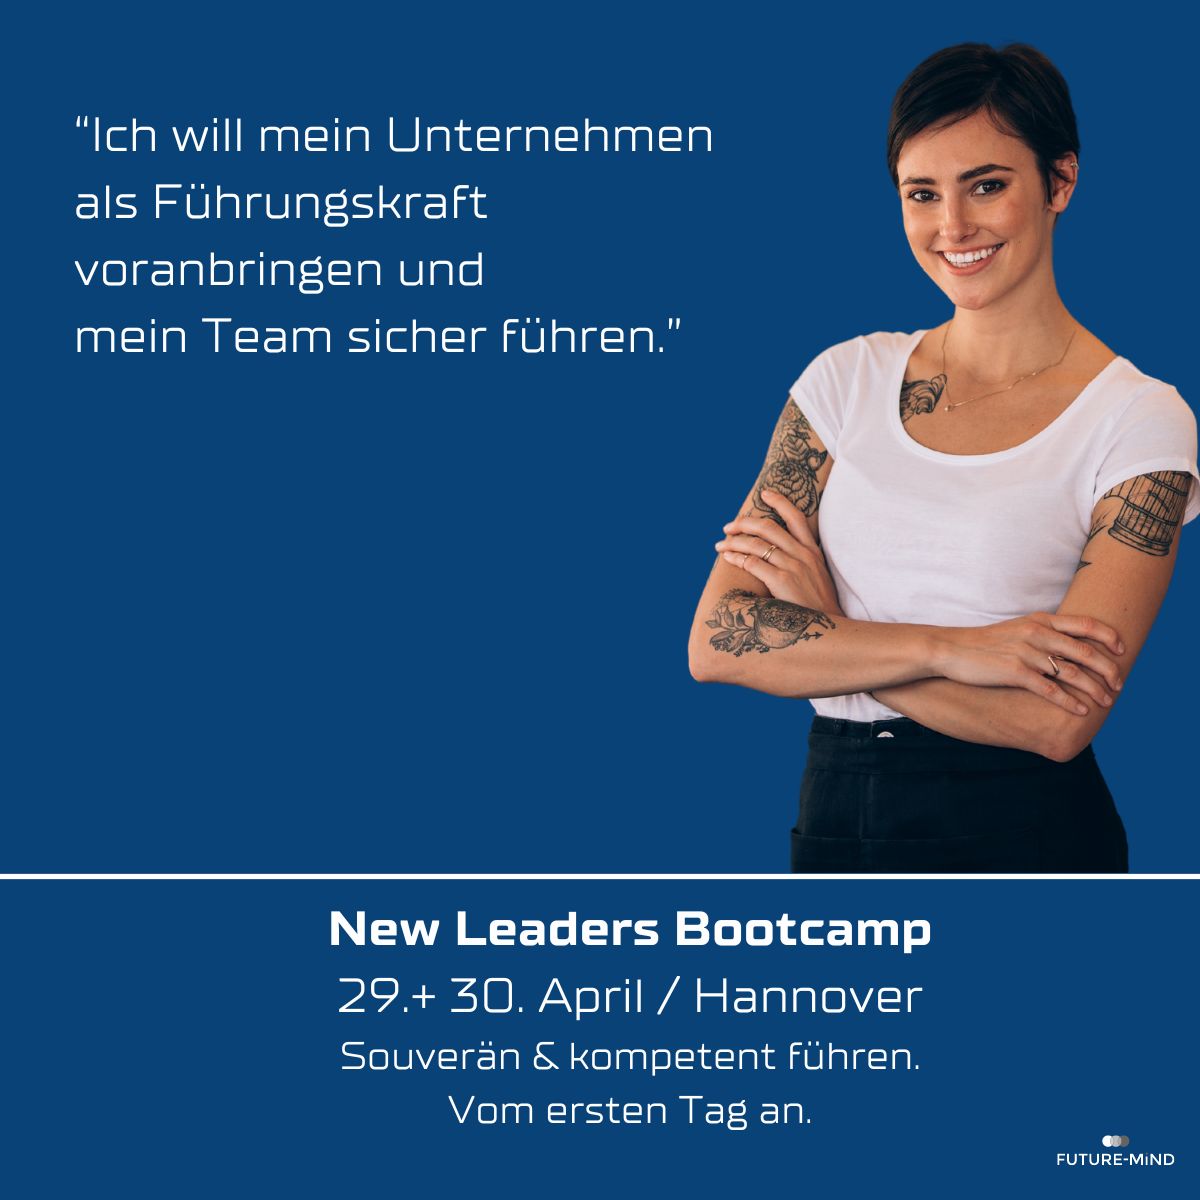 New Leaders Bootcamp. Kompetent und souverän führen. Vom ersten Tag an.